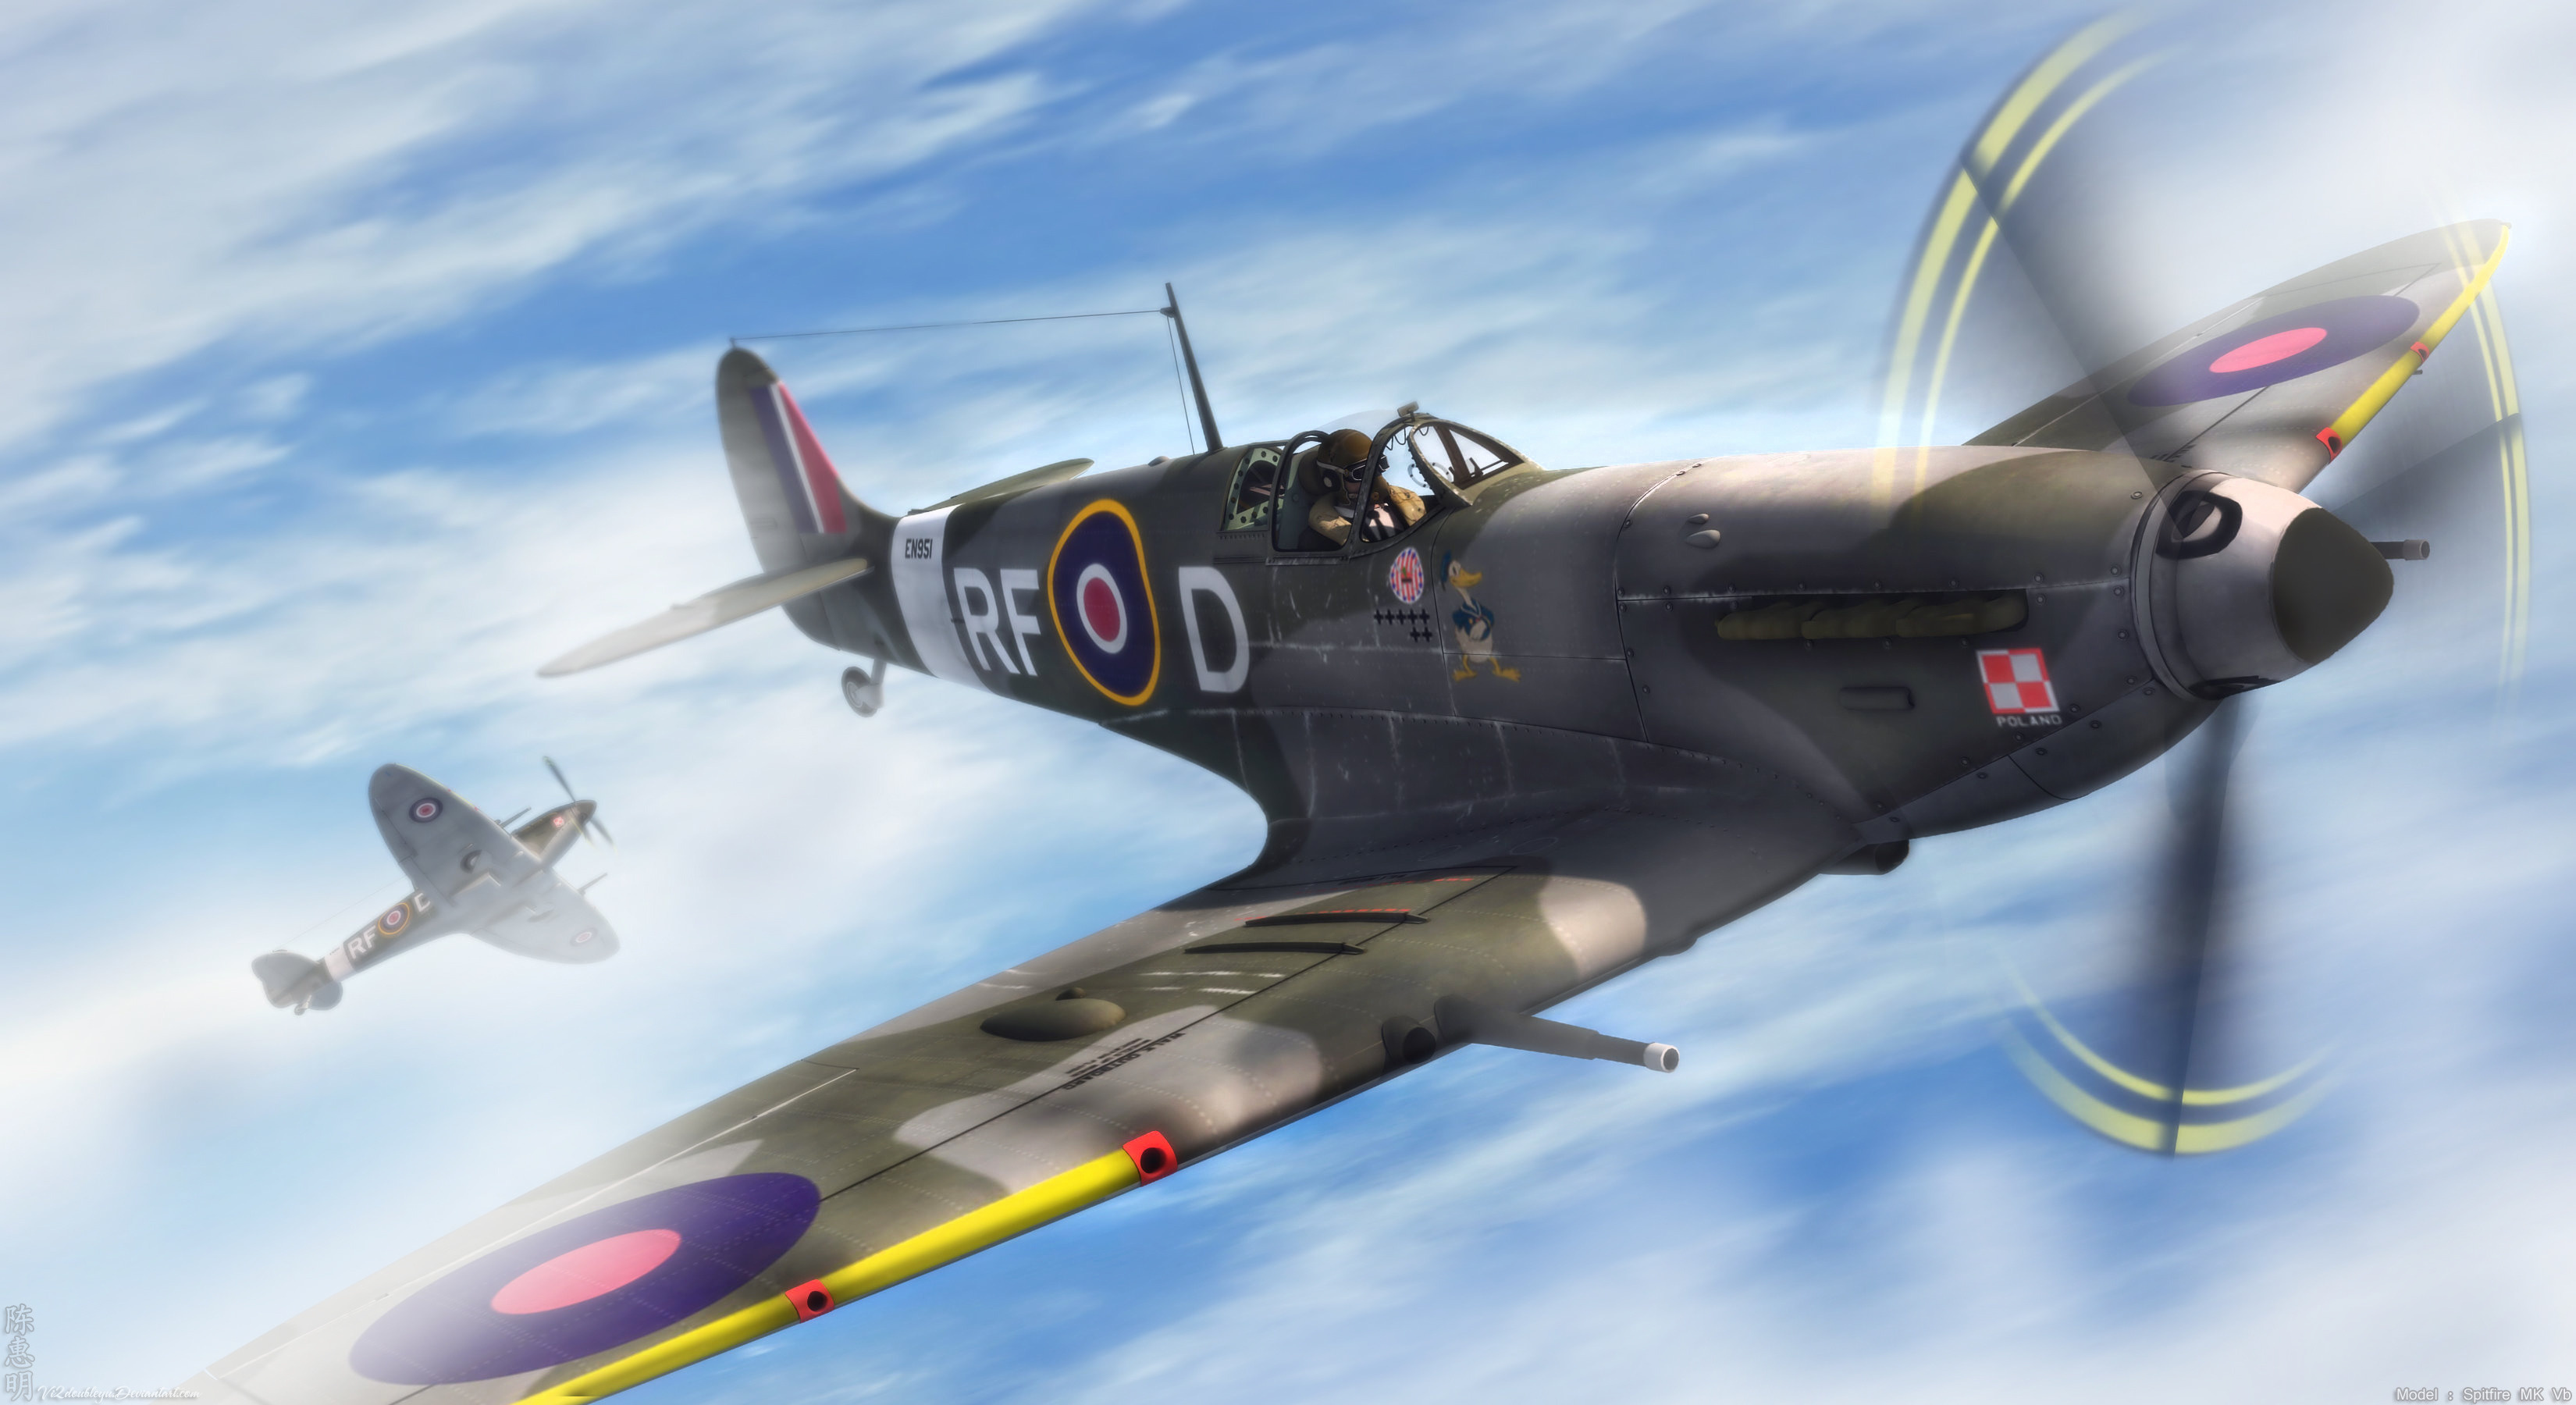 Wallpaper Spitfire Aircraft Plane Clouds Desktop Games